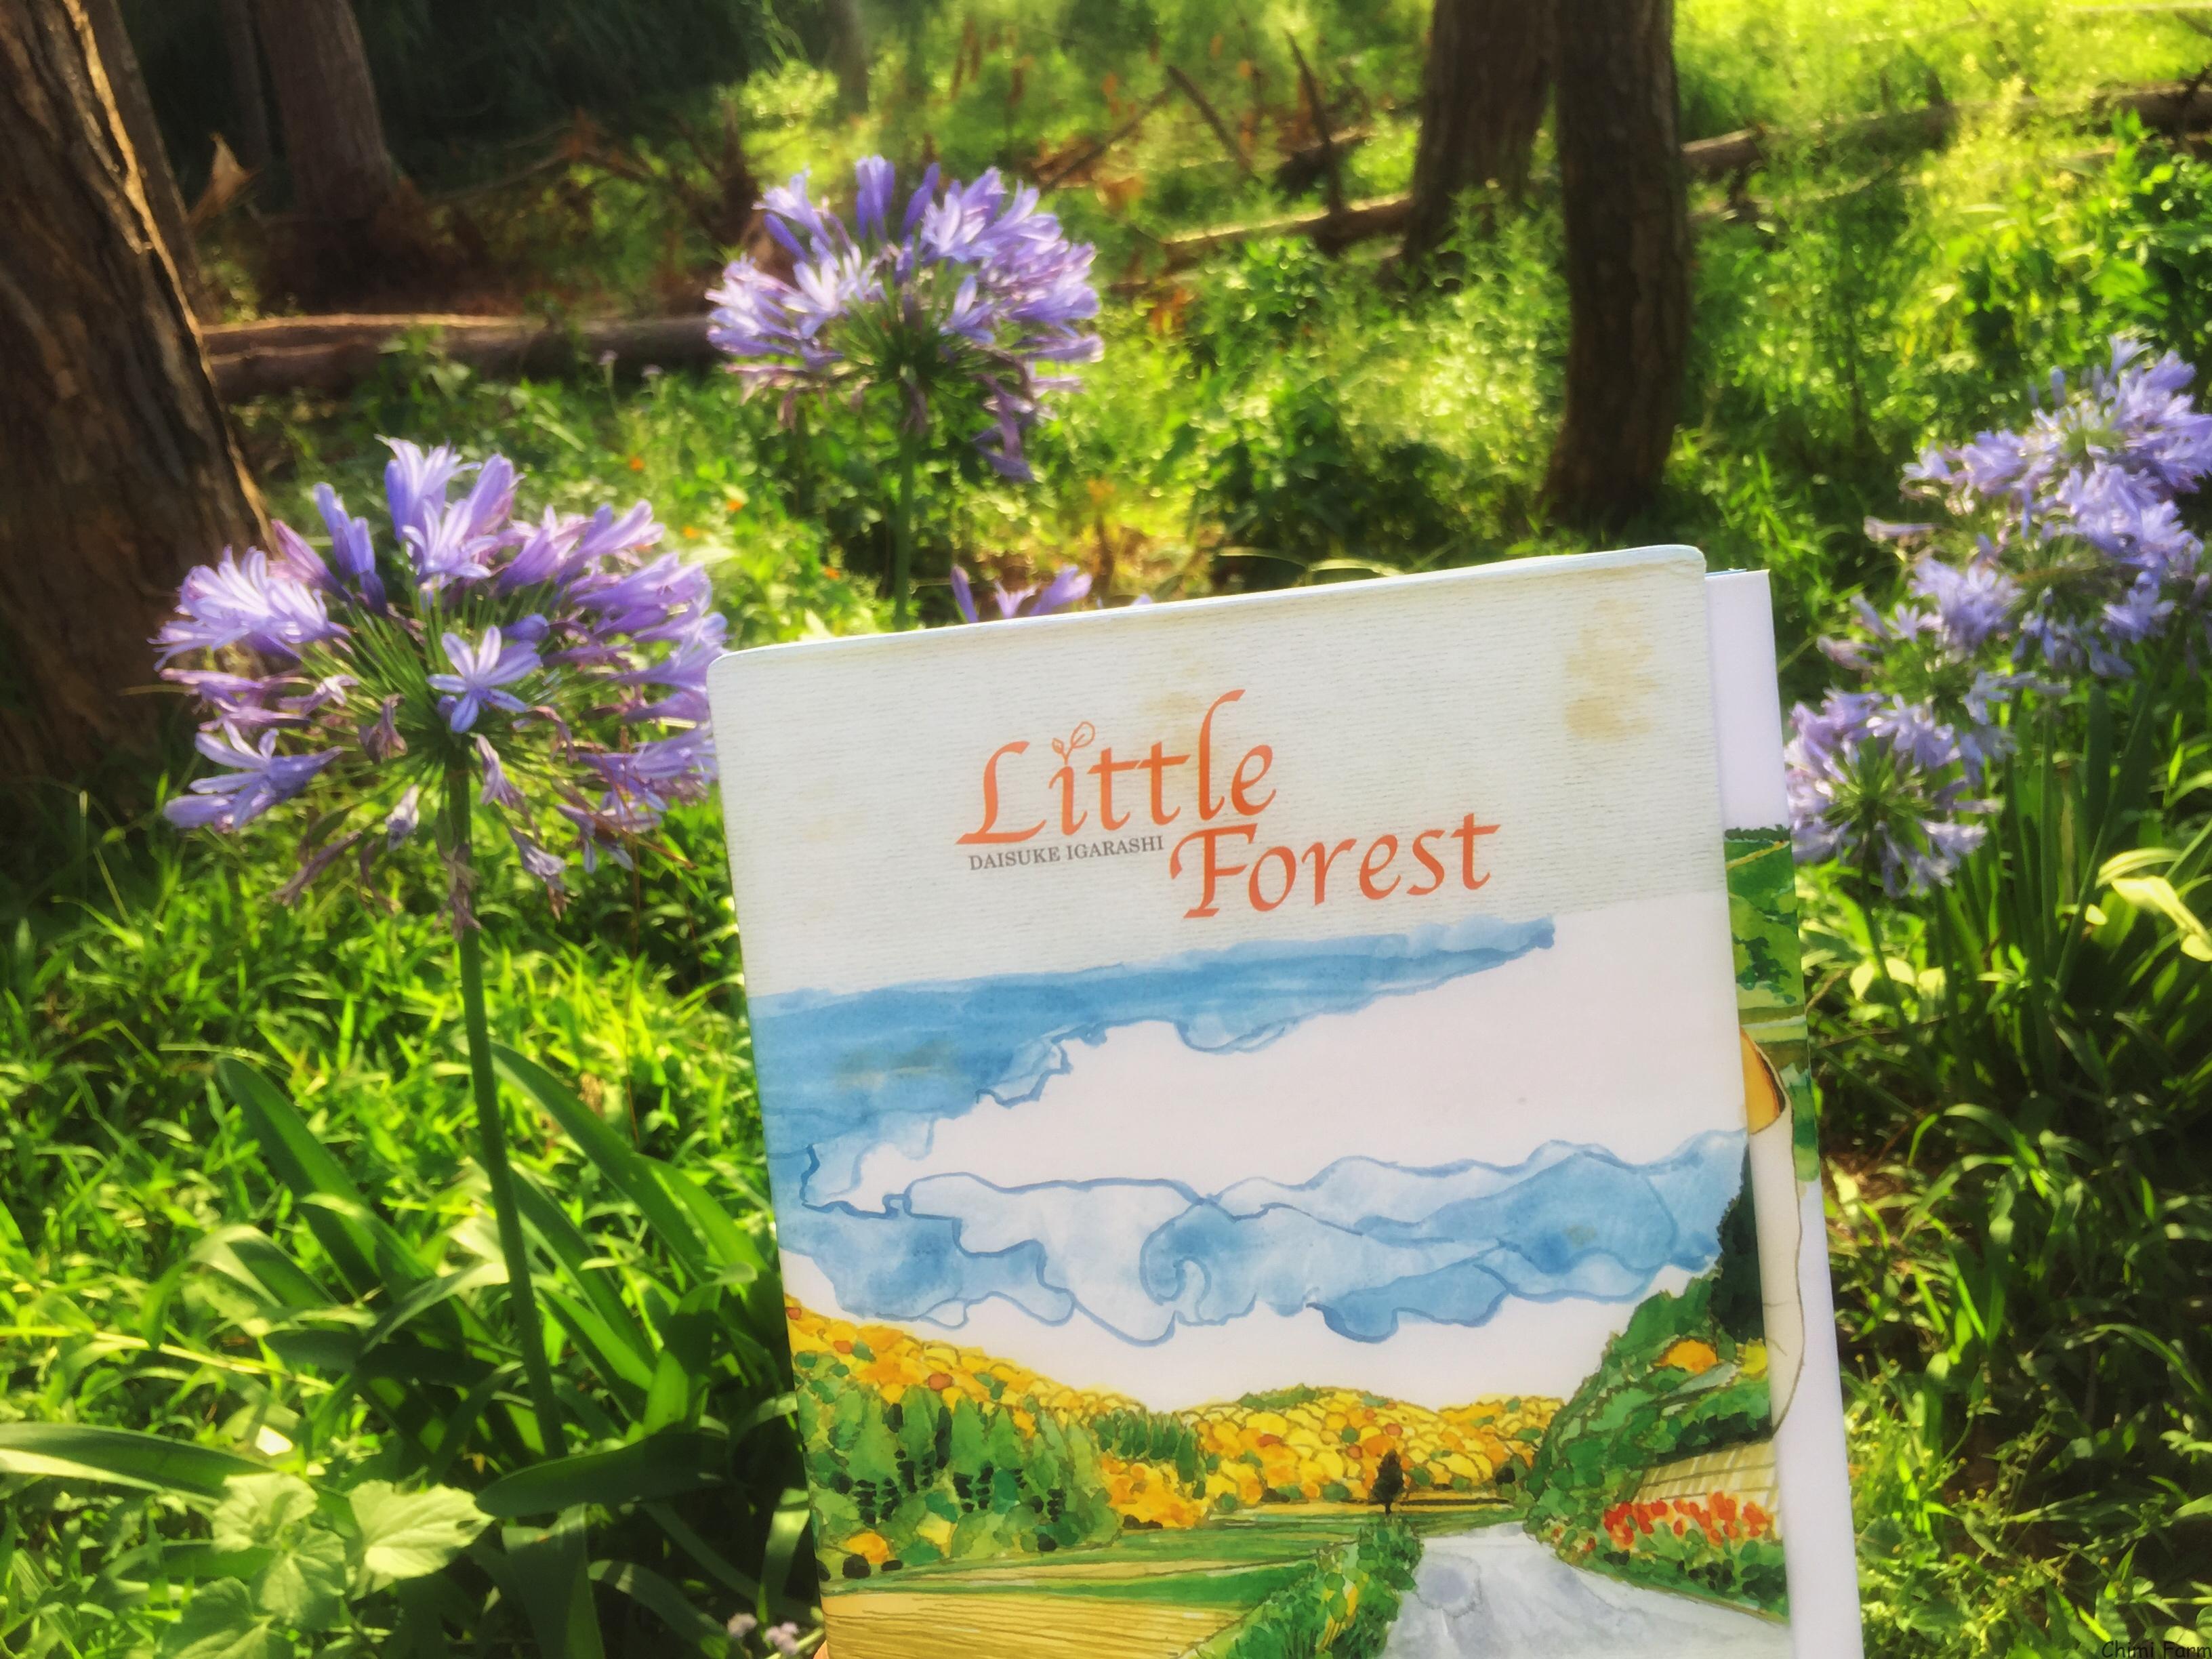 Little forest - Trong tâm hồn mỗi người đều có một Khu rừng nhỏ